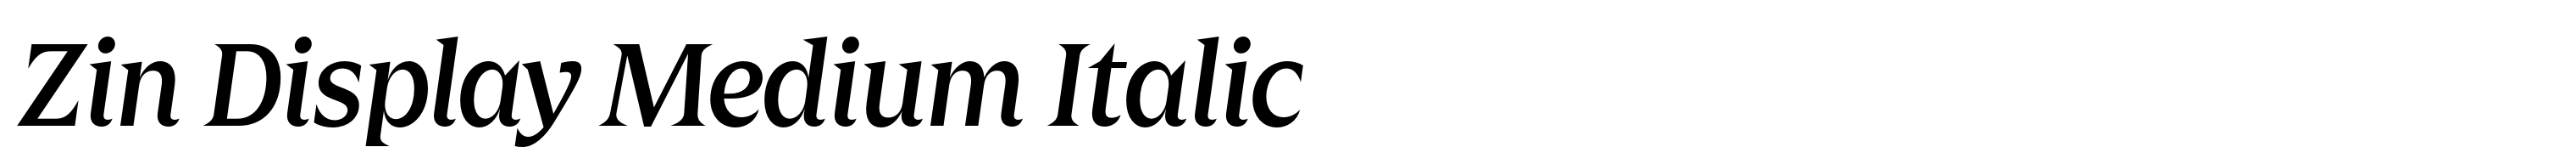 Zin Display Medium Italic